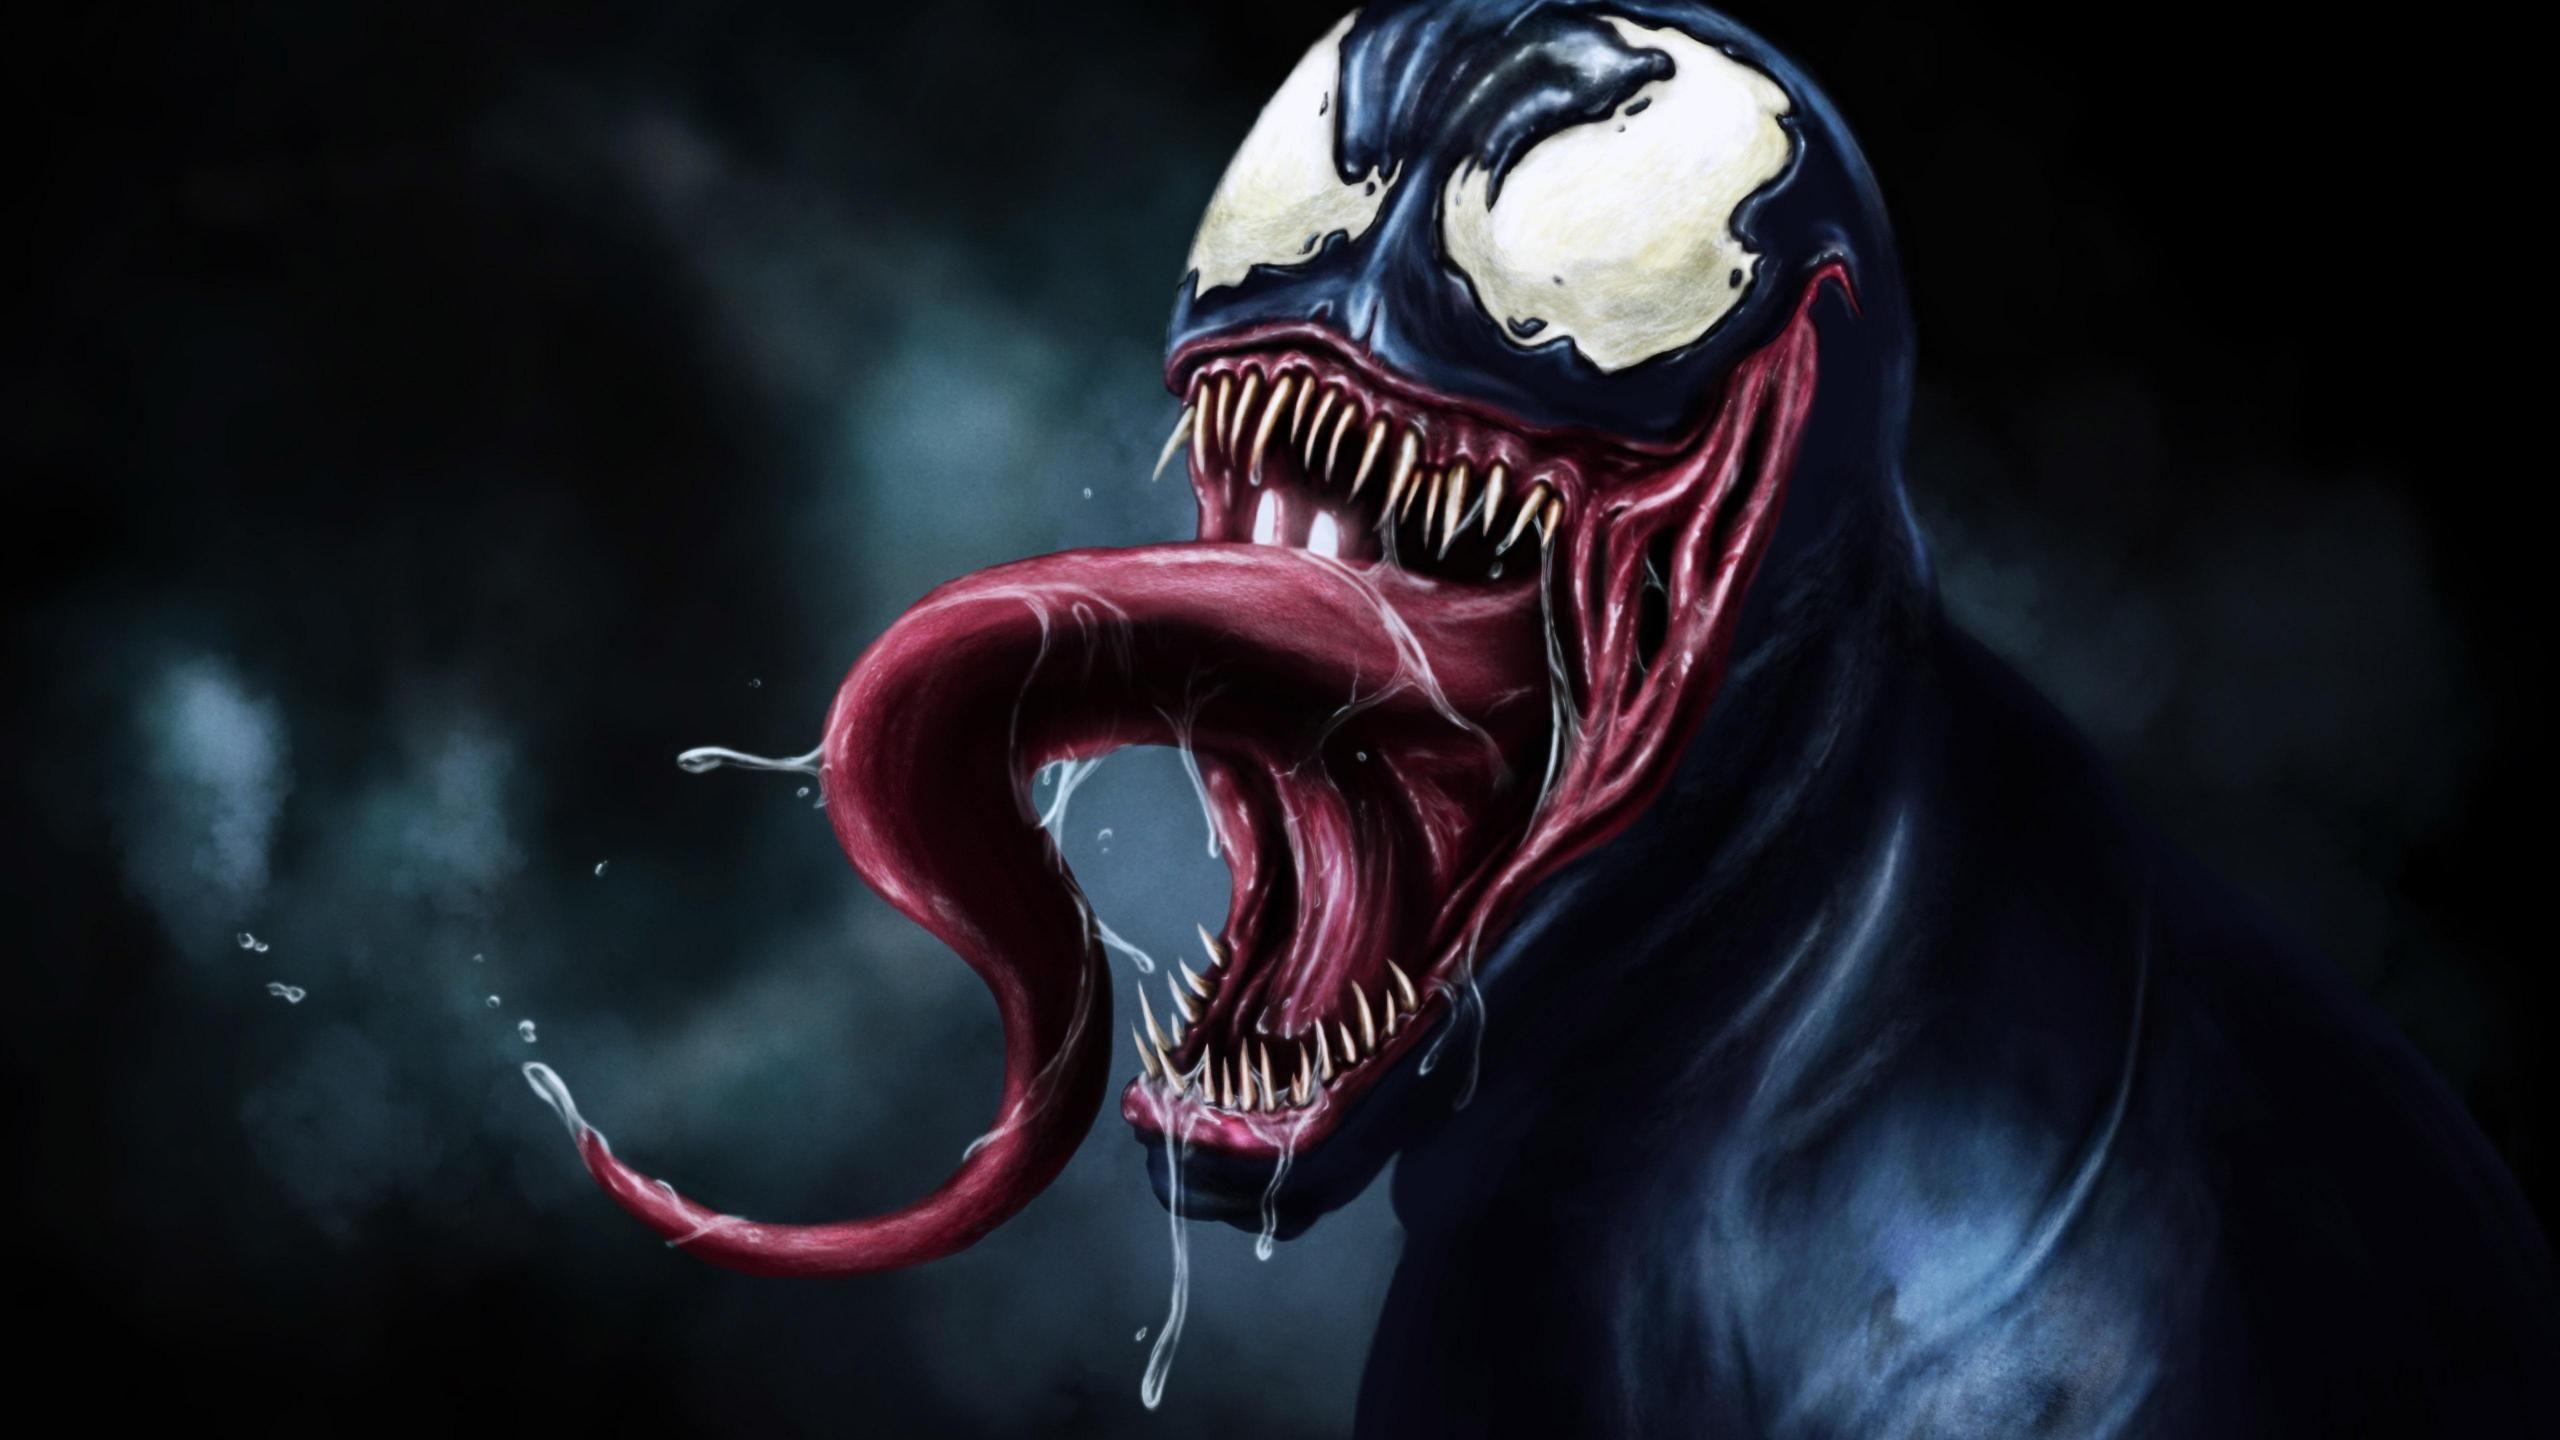 Khi sử dụng hình nền Venom 3D, đừng bao giờ bỏ lỡ cơ hội để thể hiện đẳng cấp của mình. Với hình nền này, bạn không chỉ sở hữu một hình ảnh tuyệt đẹp mà còn tạo ra sự khác biệt giữa chính mình và người khác.